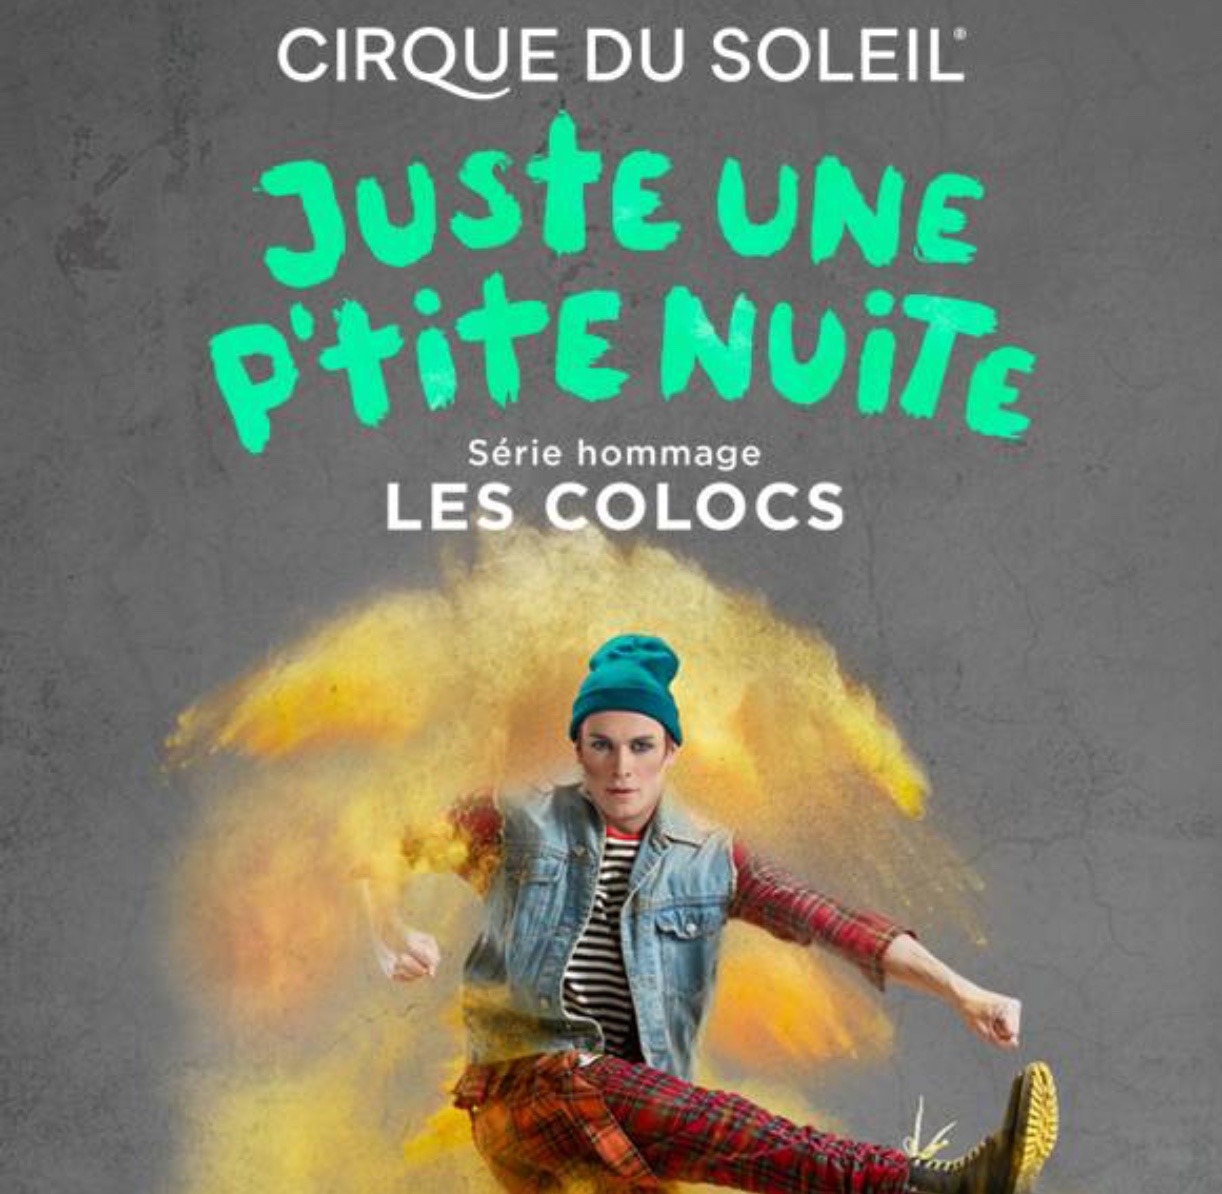 L'amphithéâtre Cogeco présente un hommage à la célèbre troupe du Cirque du Soleil en revisitant les Colocs. Juste un